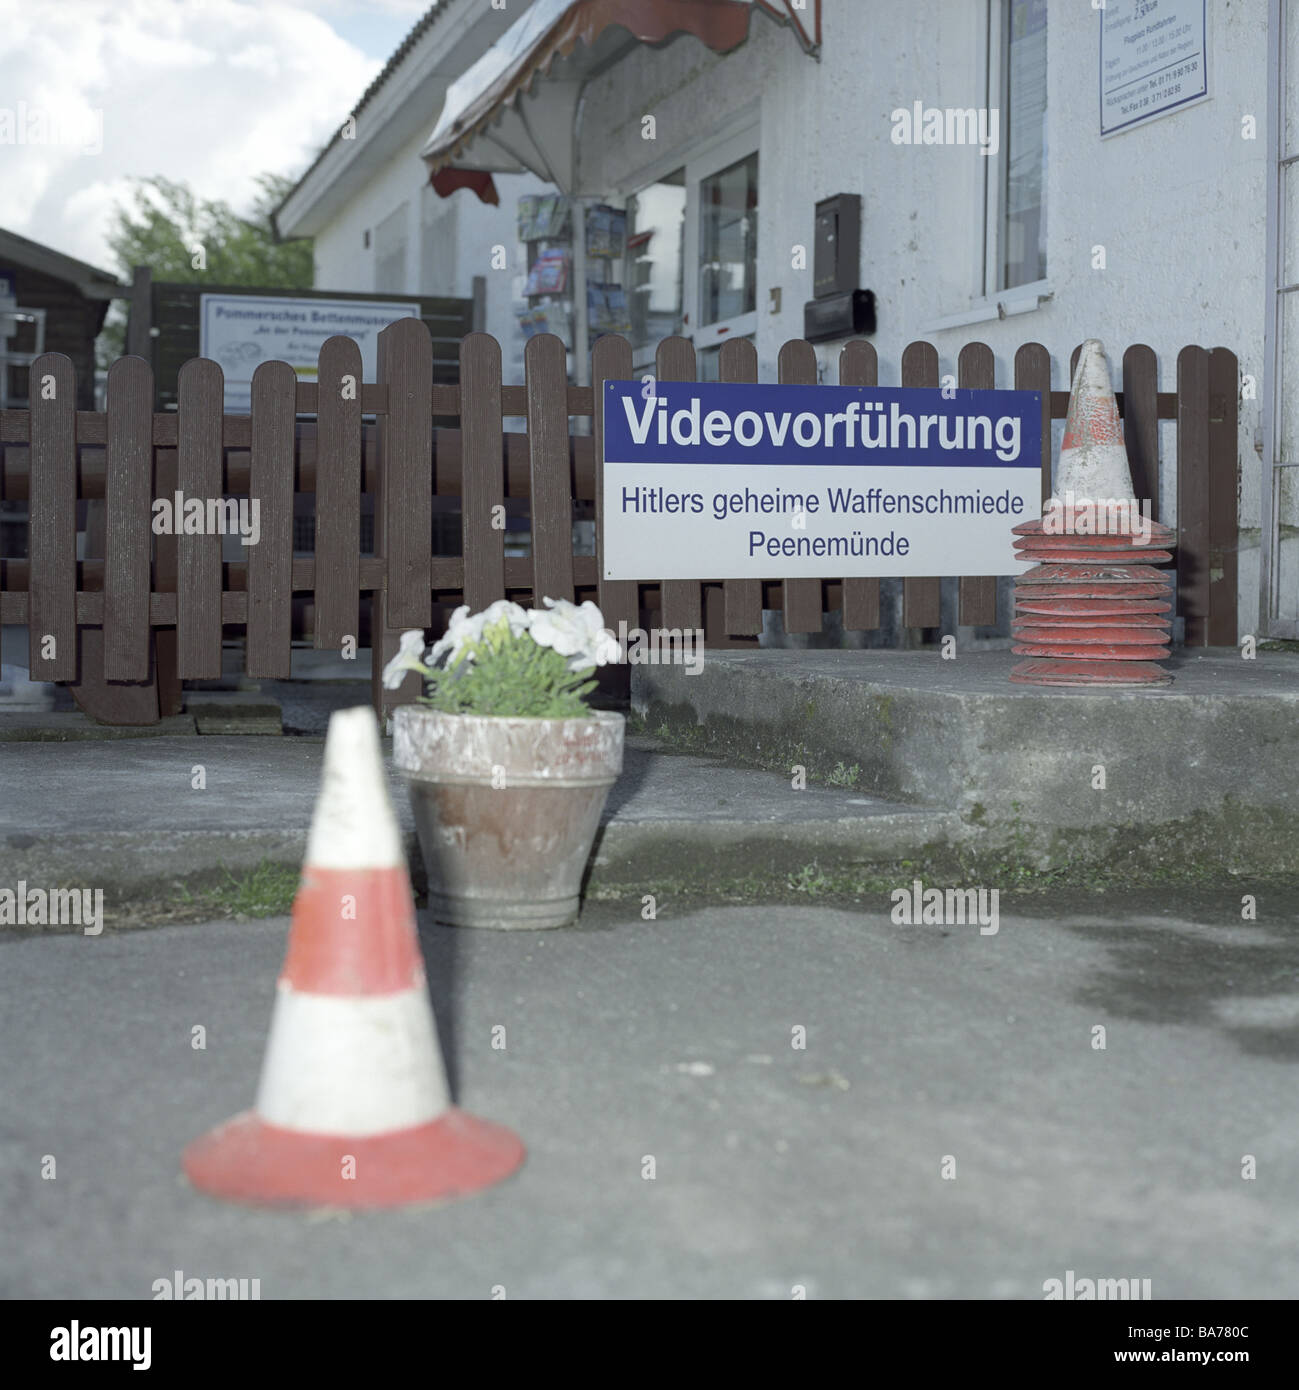 L'île de Usedom Allemagne Mecklembourg-Poméranie-Occidentale Peenemünde memorial airport sign-vidéo clôture présentation pylônes flowerpot Banque D'Images